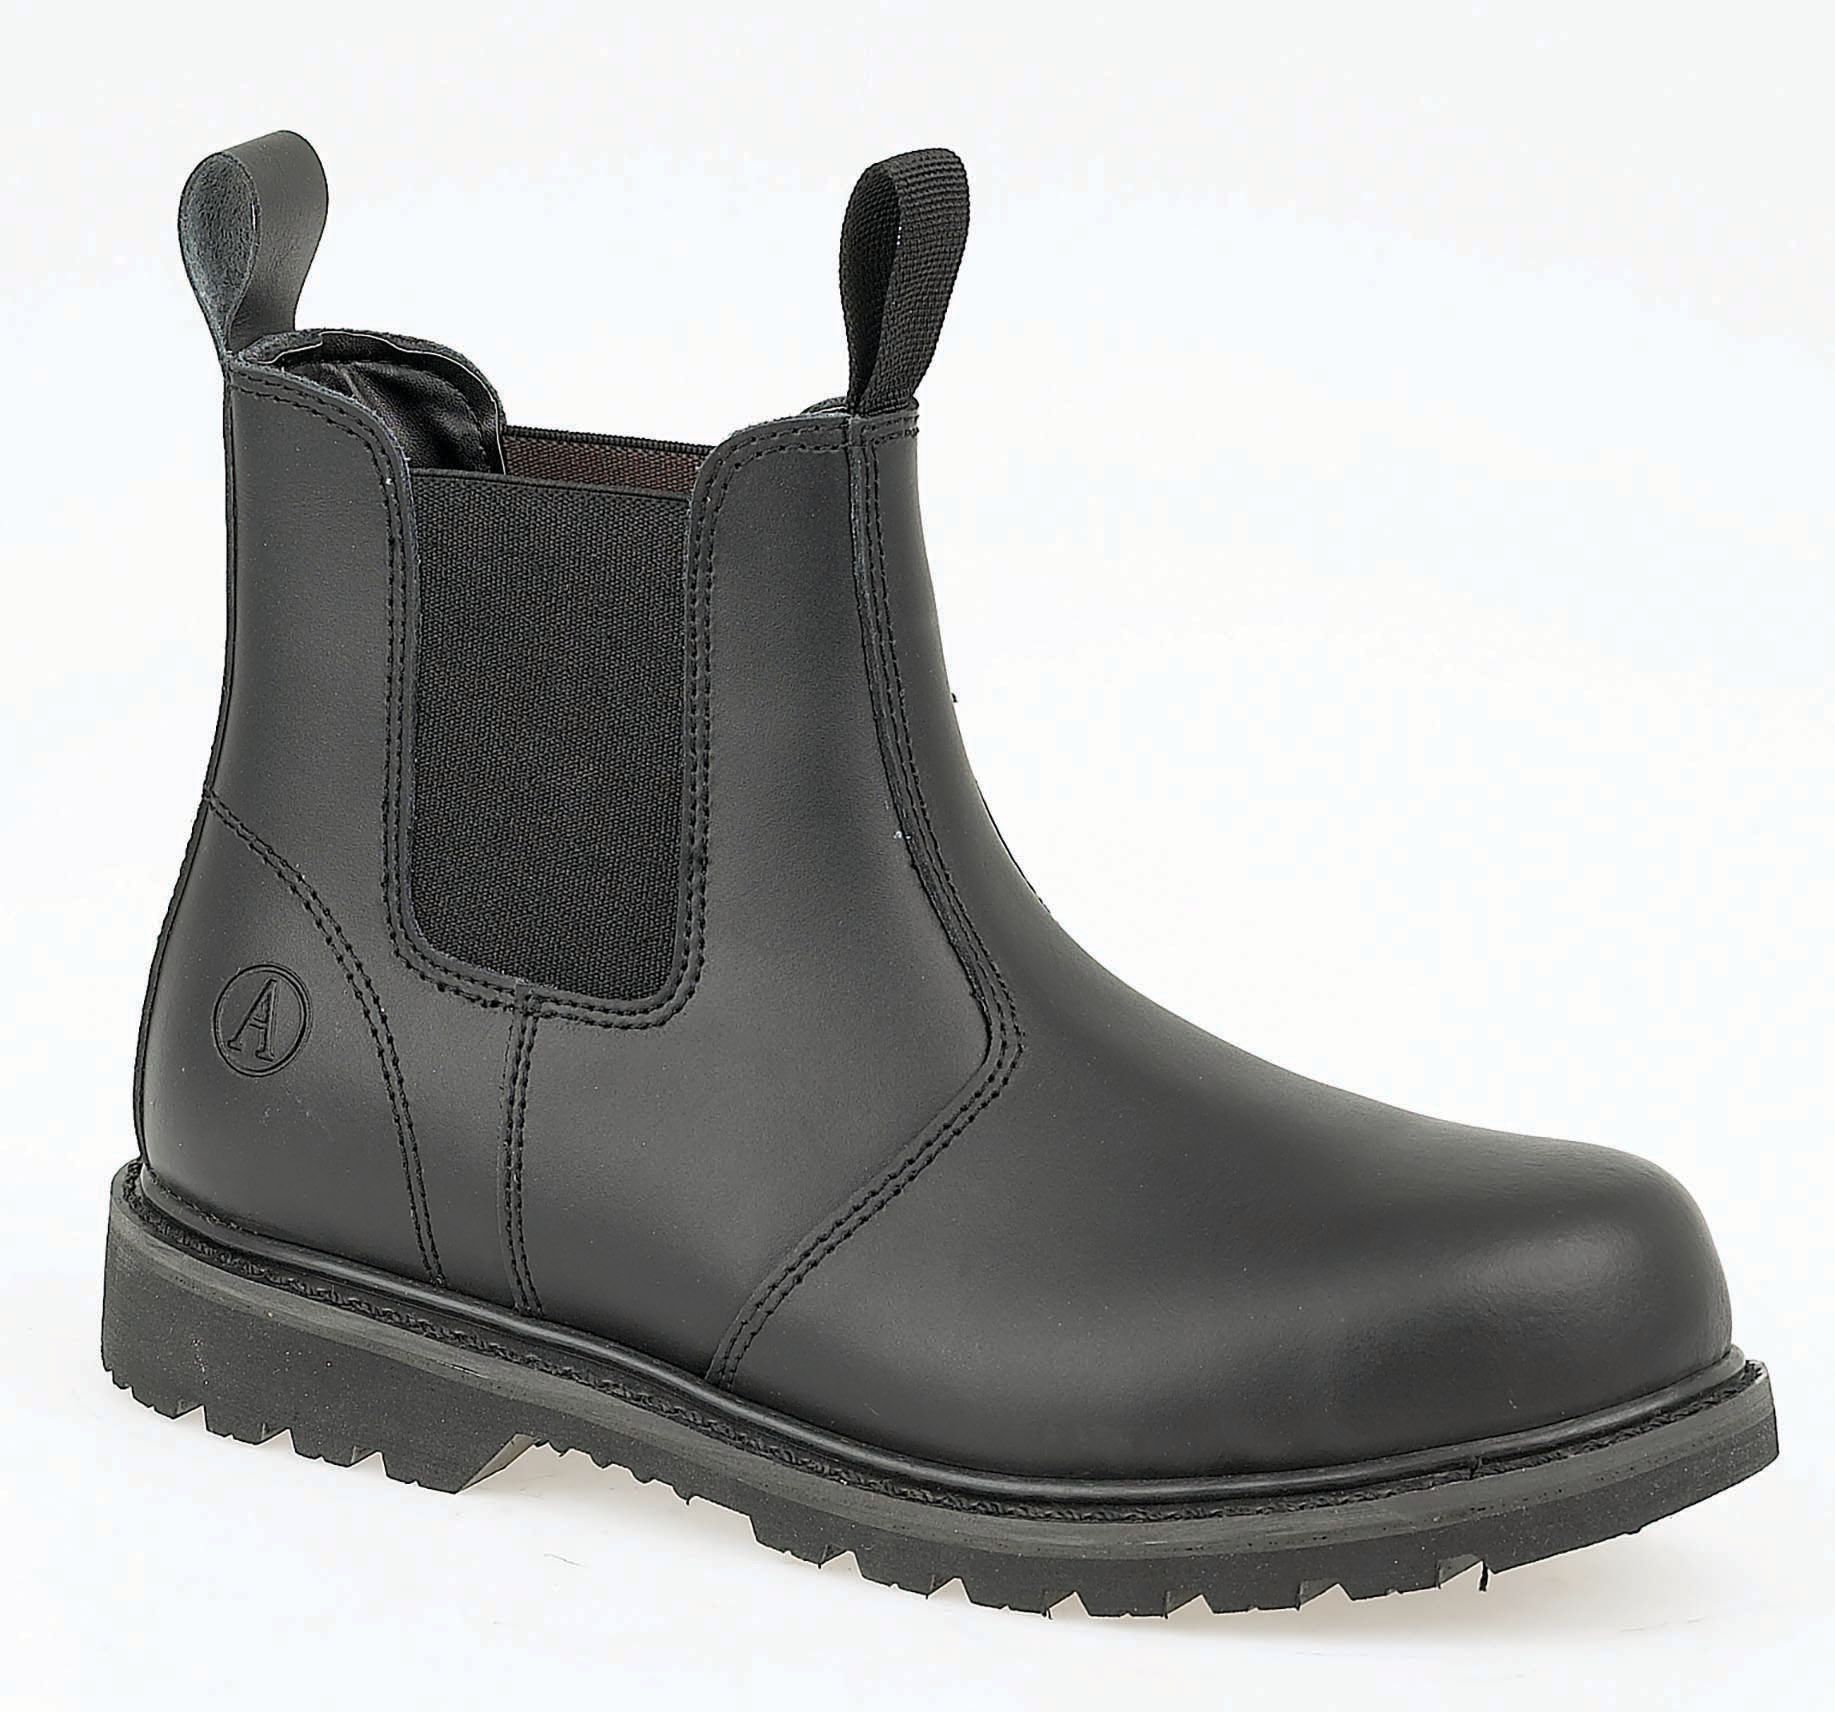 Image of Amblers Safety FS5 Dealer Safety Boot - Black Size 9